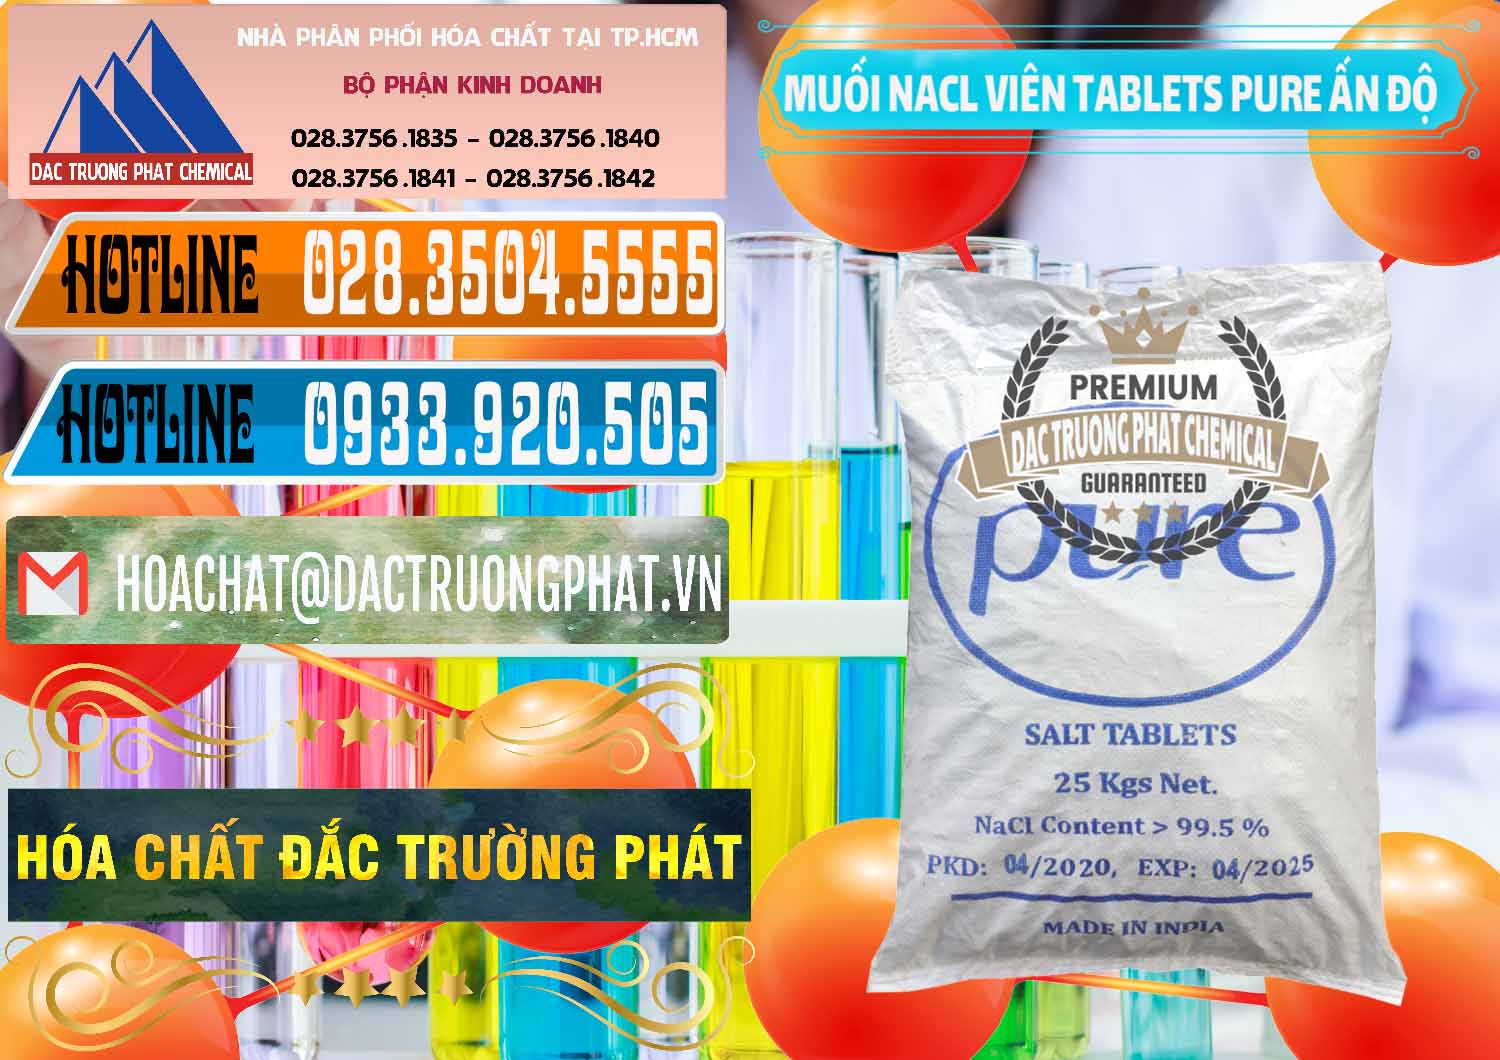 Cty chuyên kinh doanh & bán Muối NaCL – Sodium Chloride Dạng Viên Tablets Pure Ấn Độ India - 0294 - Cty bán và phân phối hóa chất tại TP.HCM - stmp.net